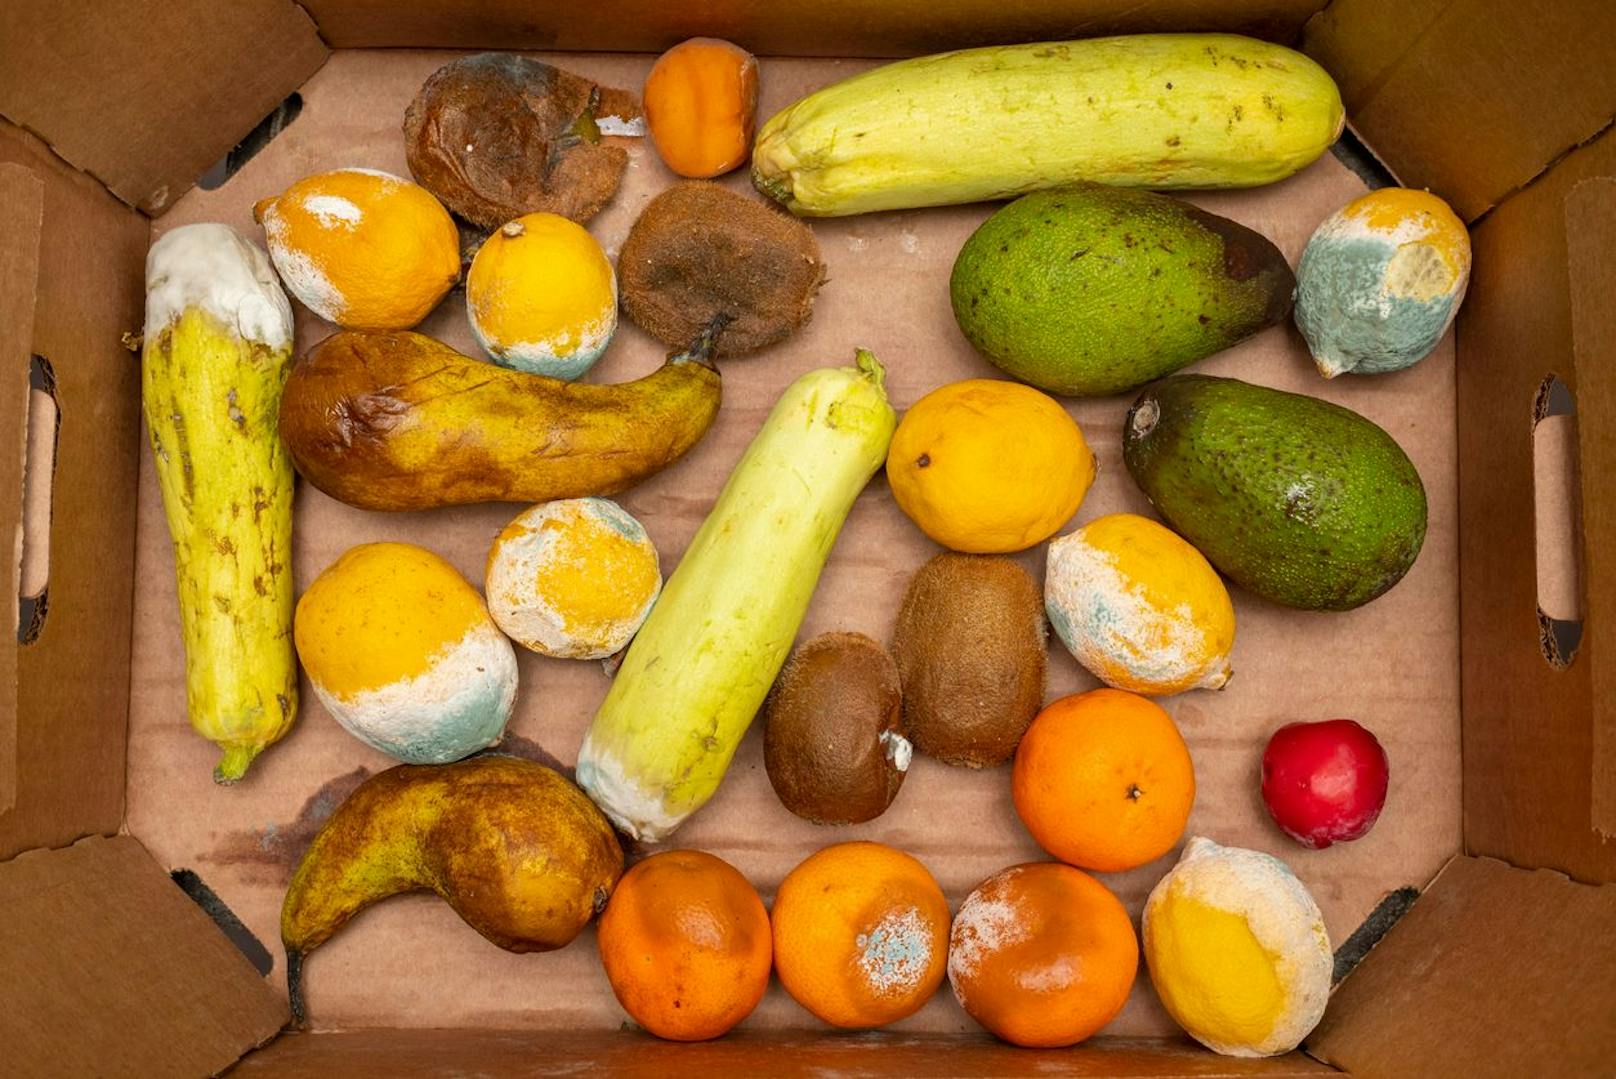 Die Arbeiterkammer OÖ hat Obst und Gemüse von verschiedenen Supermärkten unter die Lupe genommen. Die Resultate sind erschreckend. (Symbolbild)